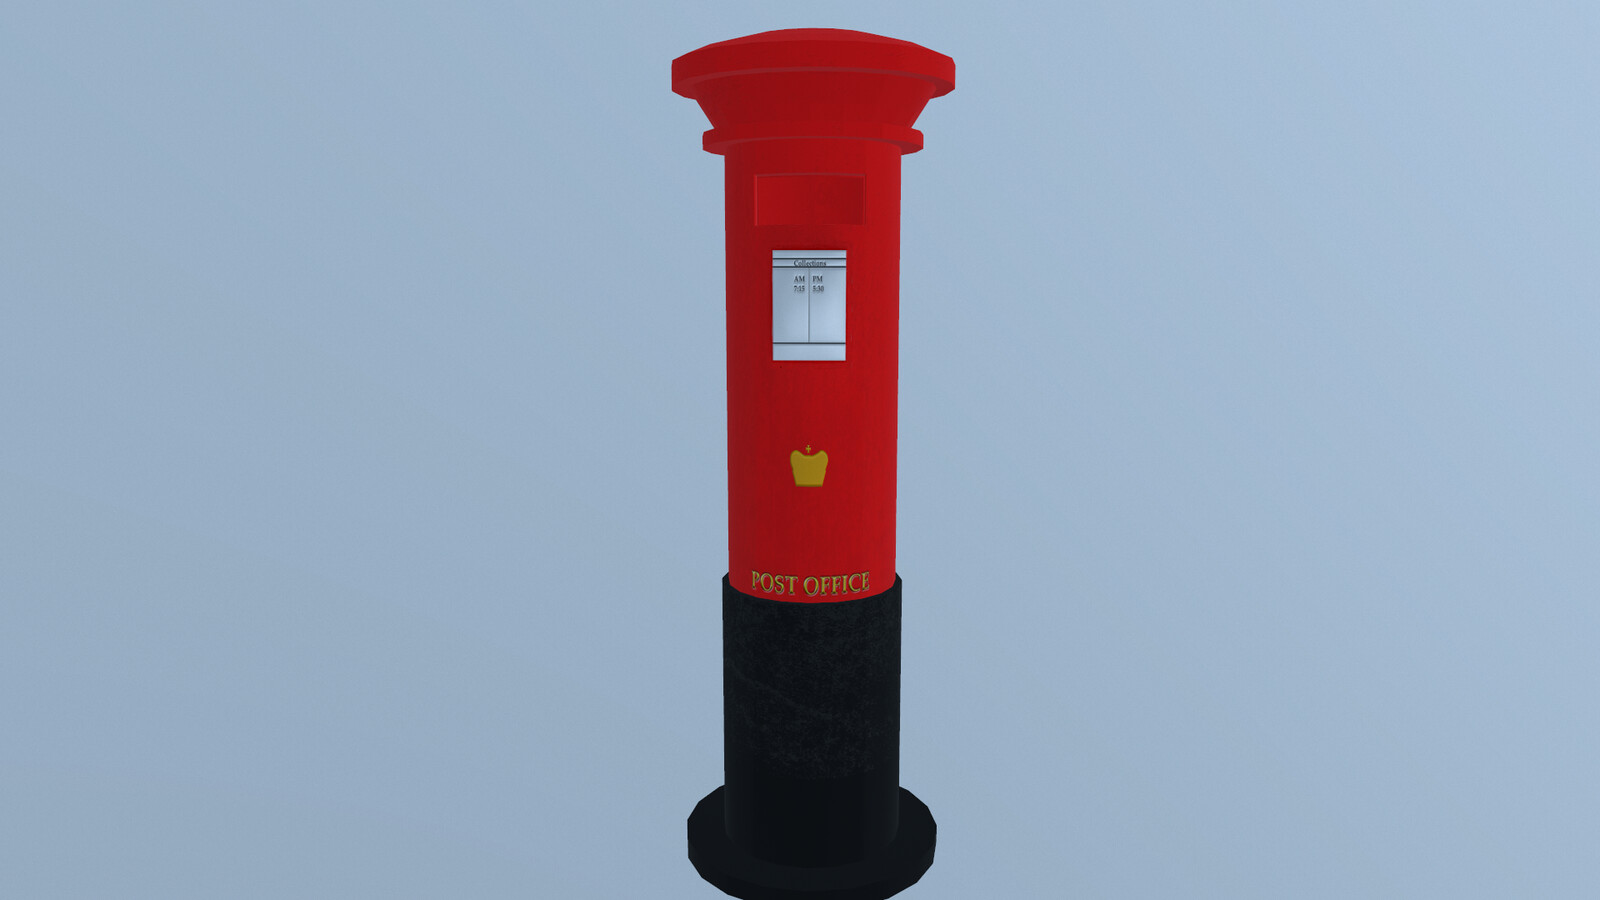 British post box